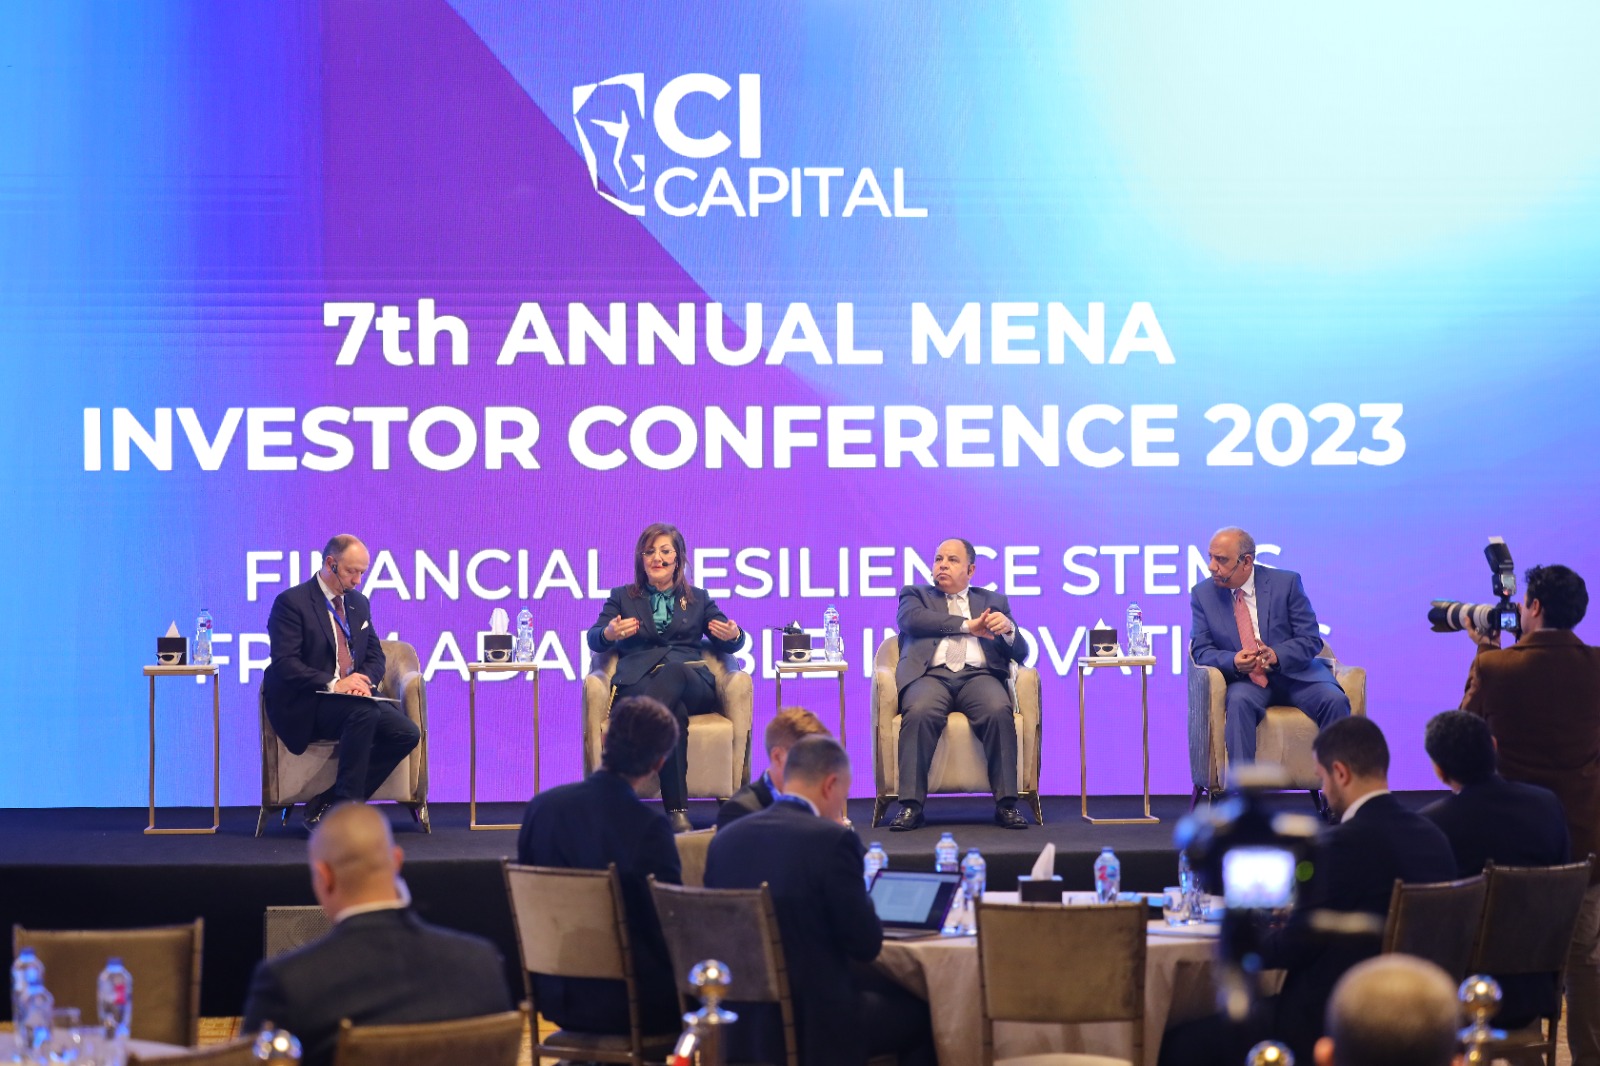 بحضور ومشاركة مدبولي و وزراء سي آي كابيتال تختتم المؤتمر السنوي لمستثمري منطقة الشرق الأوسط وشمال أفريقيا